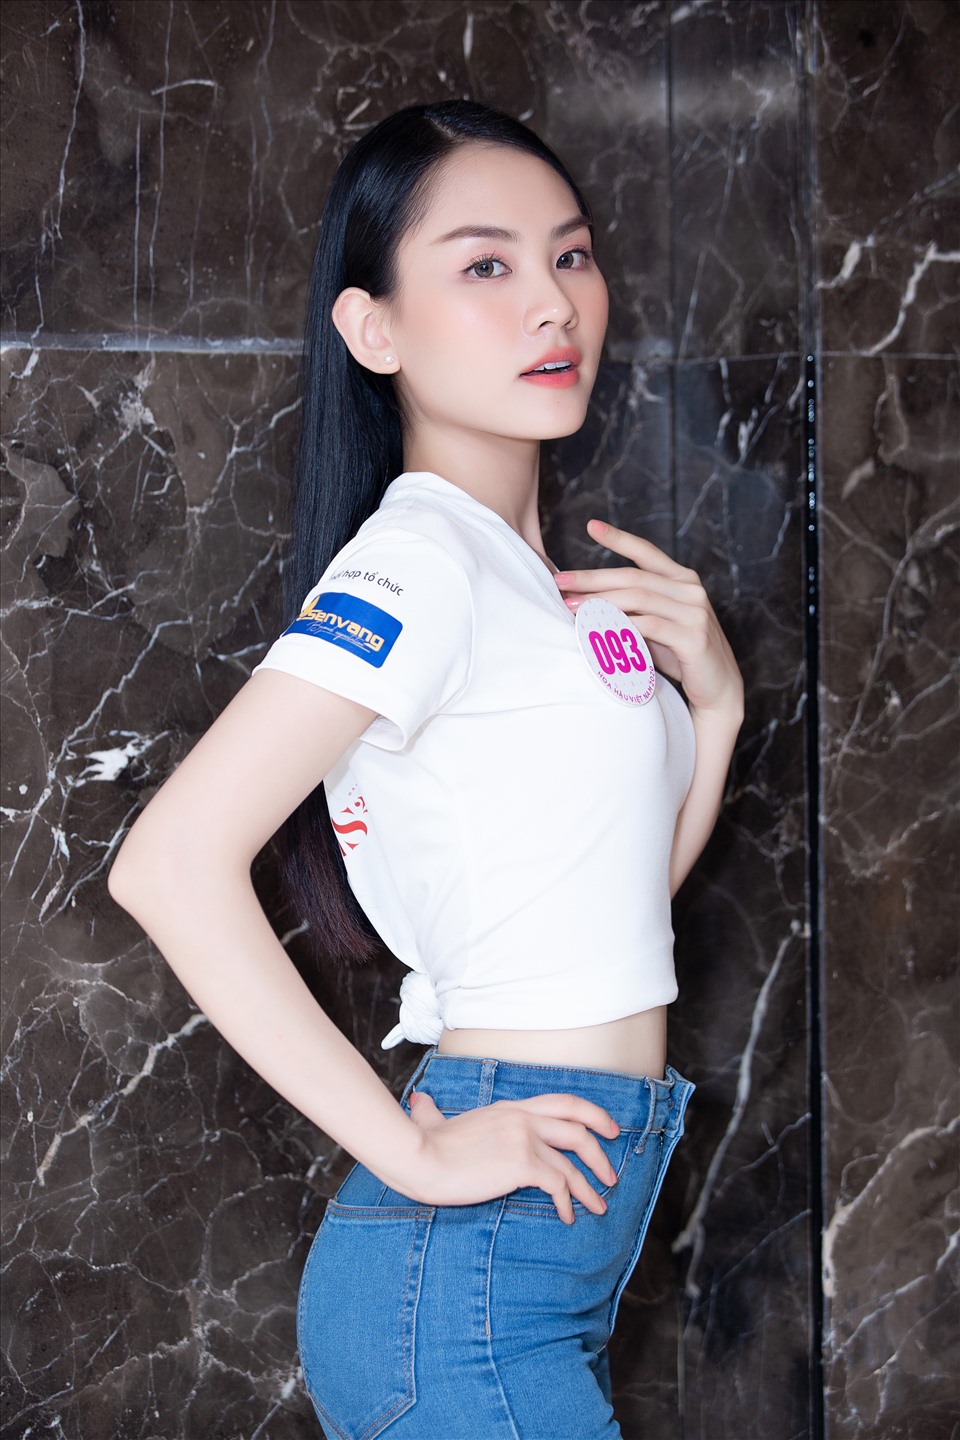 Vốn được mệnh danh là “nữ thần mặt mộc“, Hoa khôi Đại học Đồng Nai Huỳnh Mai Phương cũng là ứng cử viên sáng giá cho ngôi vị cao quý. Ảnh: SV.